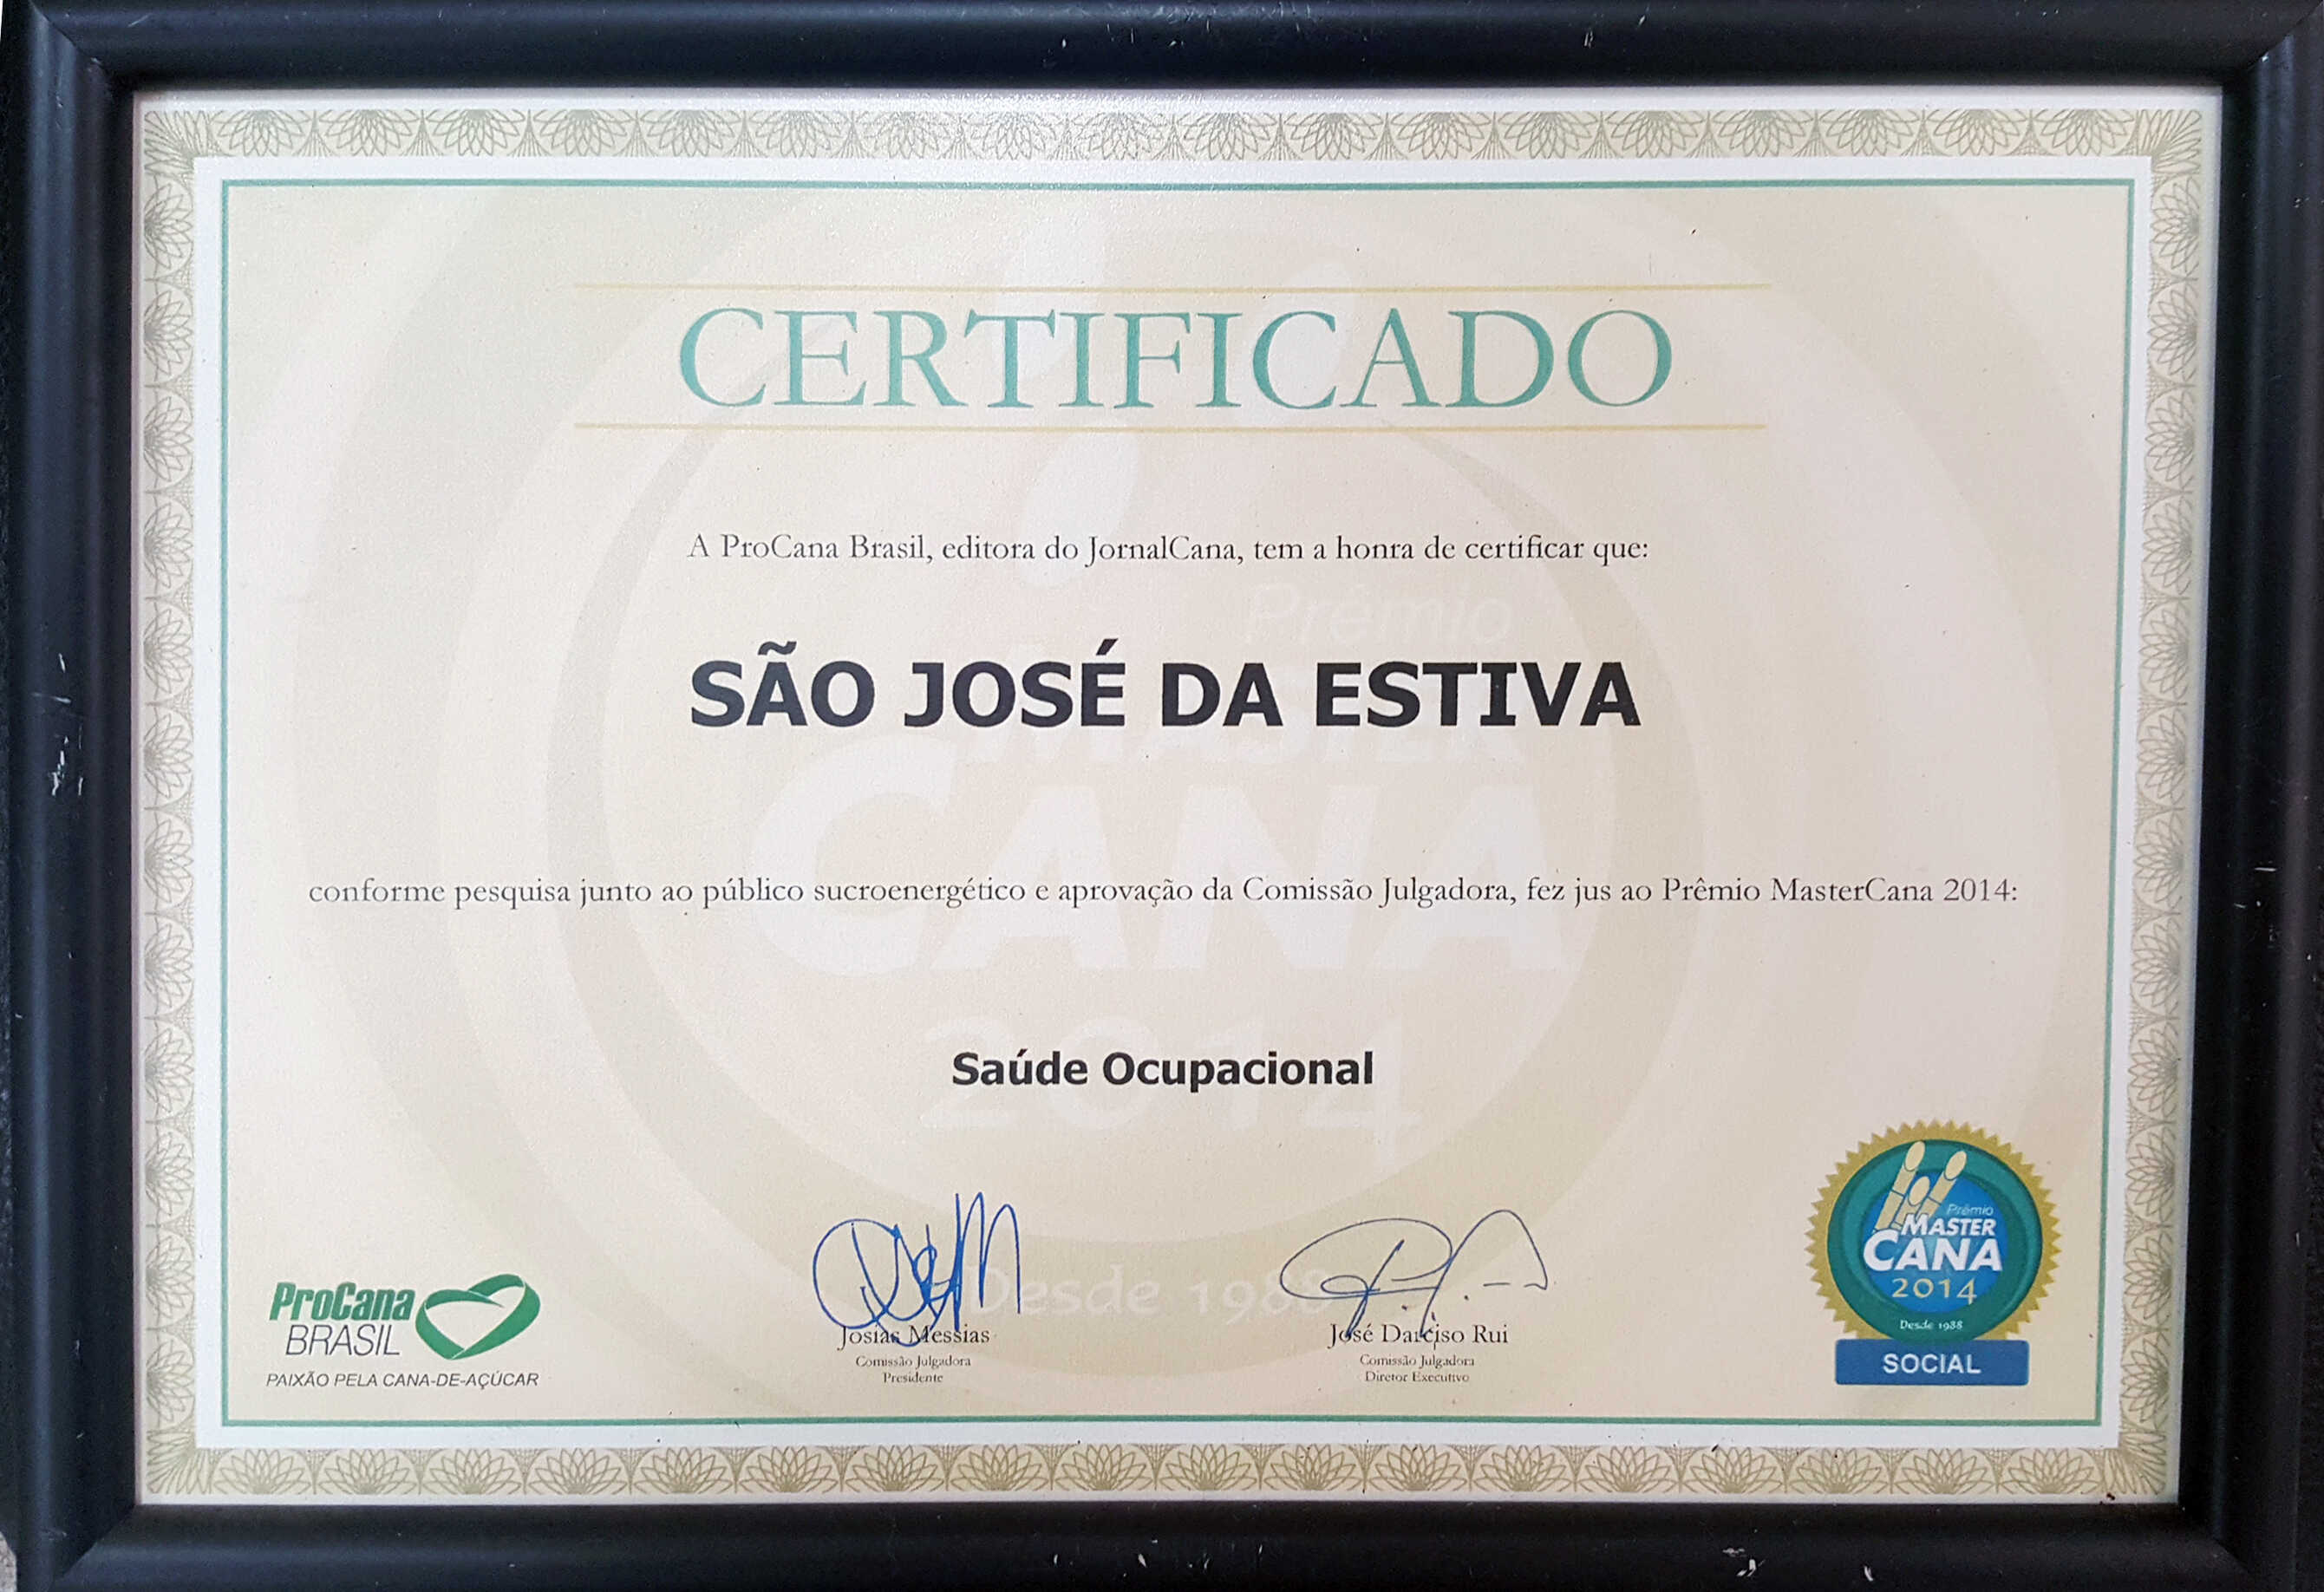 2014-Certificado MasterCana Social-Saúde Ocupacional.jpg (2.59 MB)